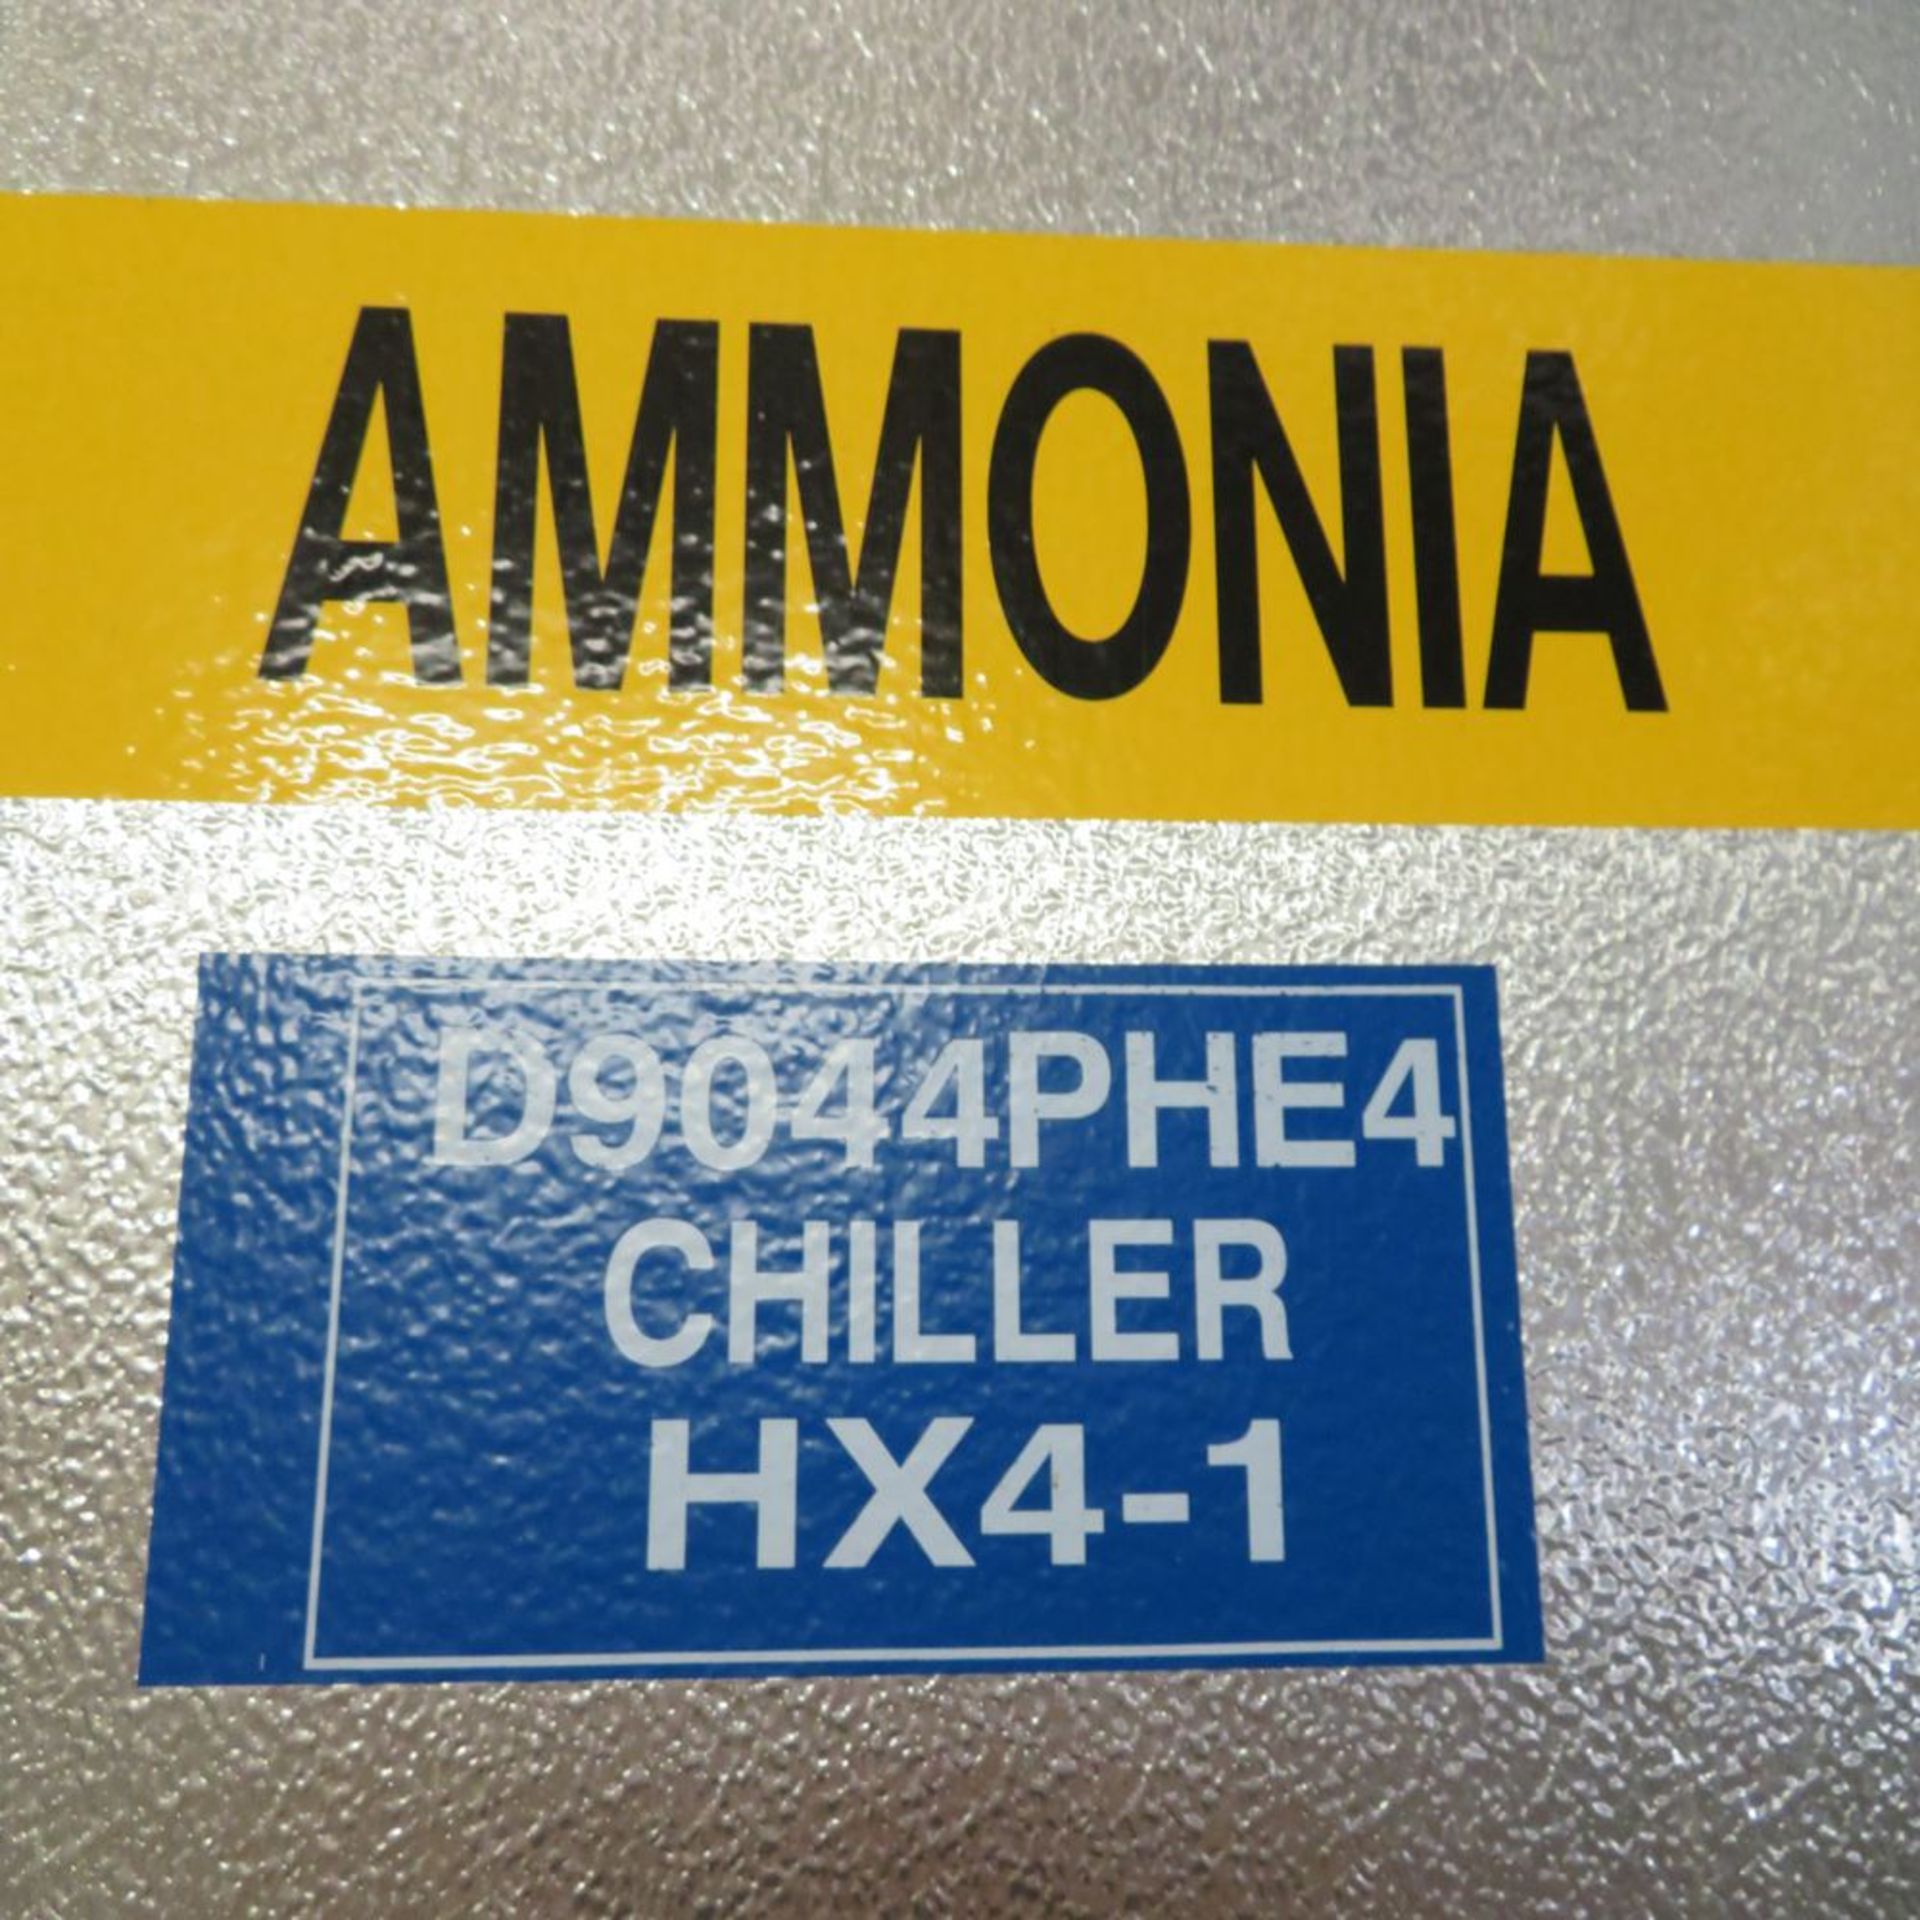 (2011) RVS Ammonia Surge Drum, SD 4-1 w/ Ammonia Chiller HX, D9044PHE4 (No Wire/Pipe) - Image 4 of 5